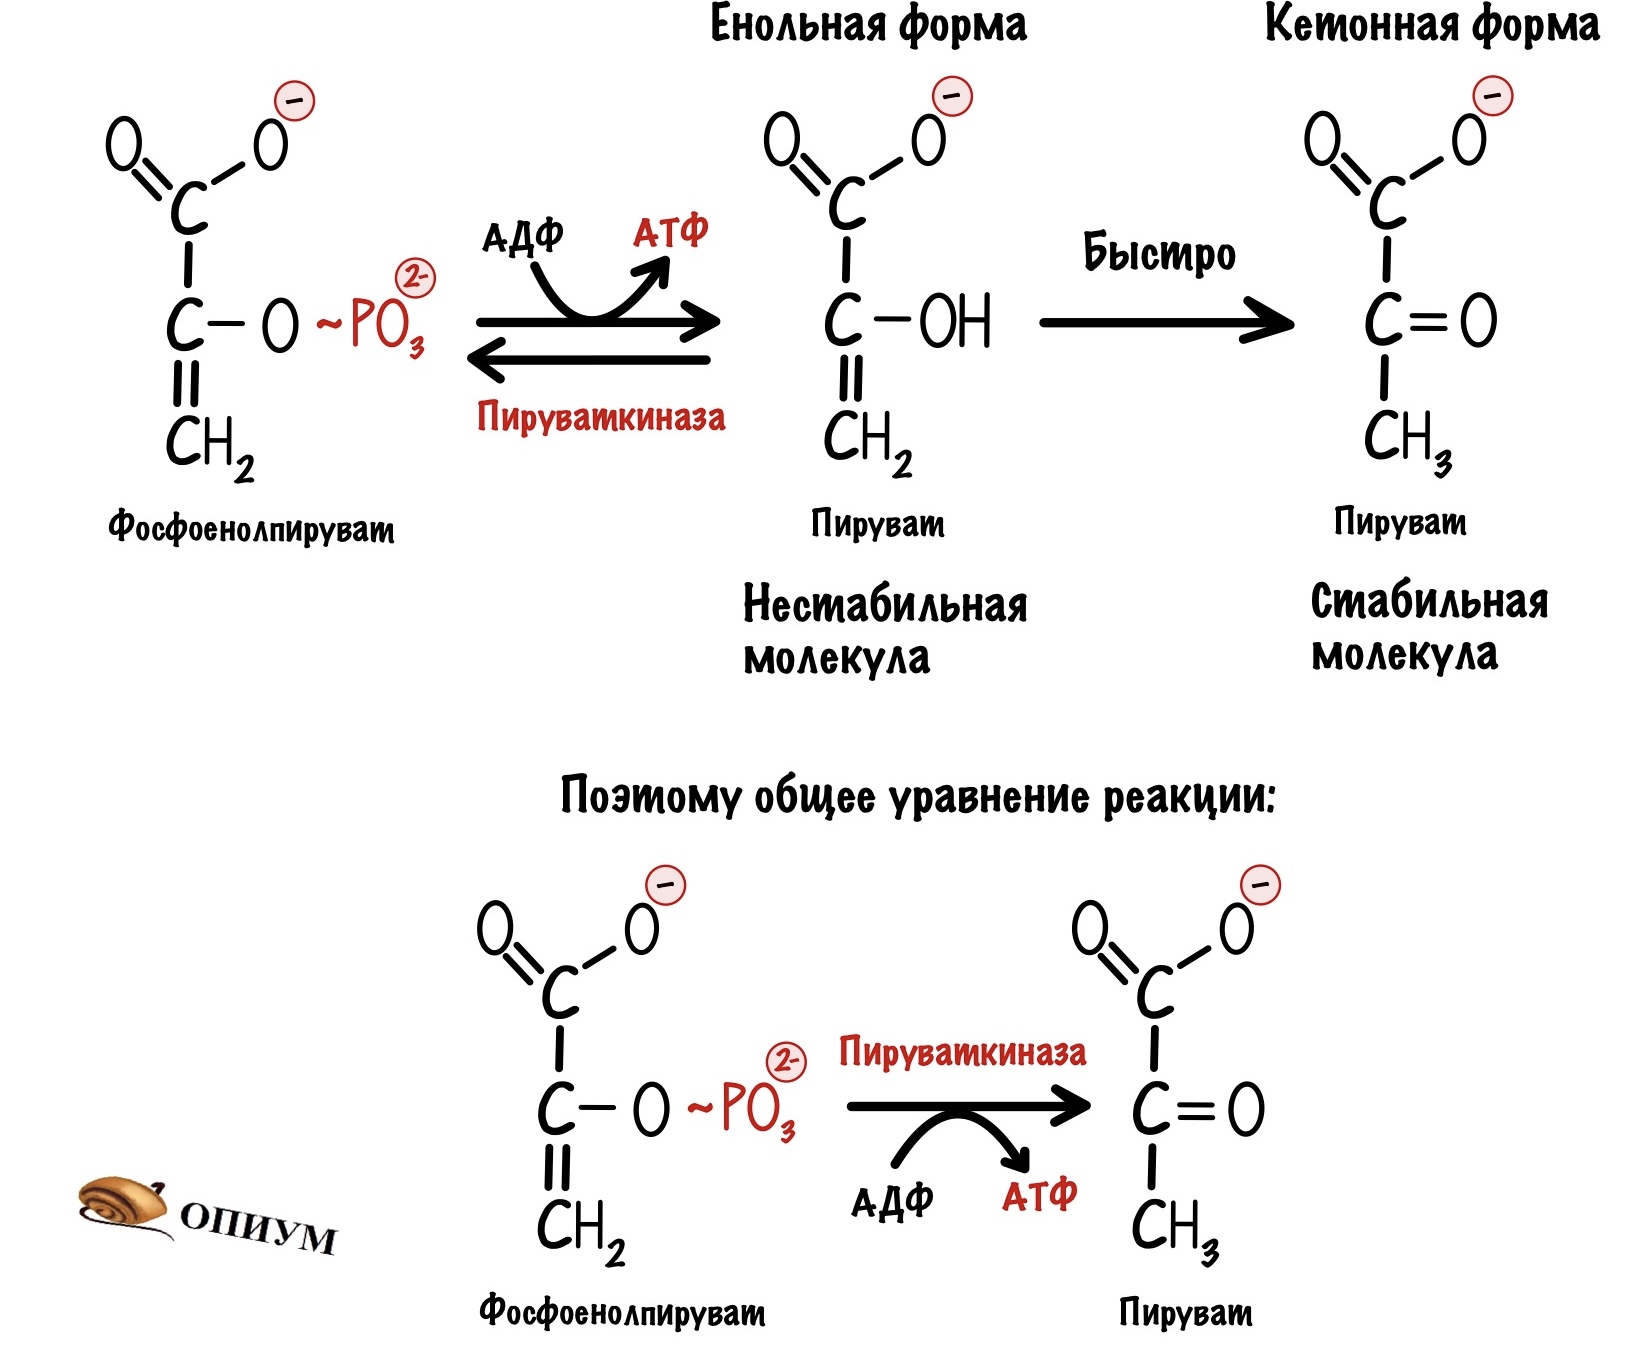 Пировиноградная кислота биополимер. Кето и енольные формы. Енольная форма пировиноградной кислоты. Кето-енольные формы пировиноградной кислоты. Обходные реакции глюконеогенеза.